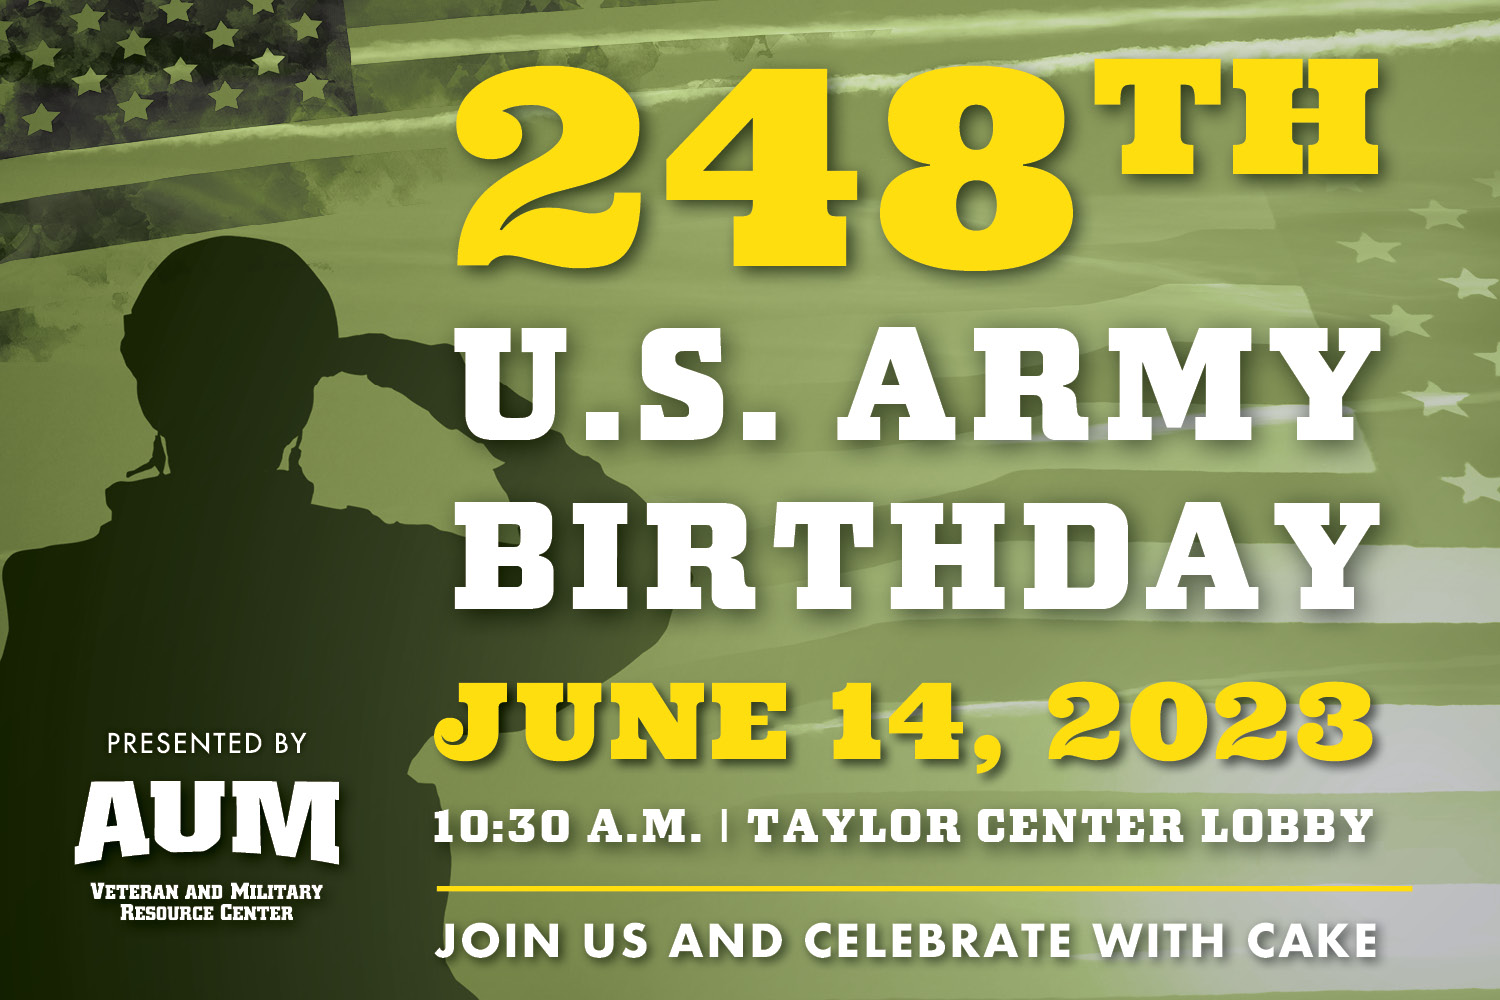 248th Army Birthday - AUM